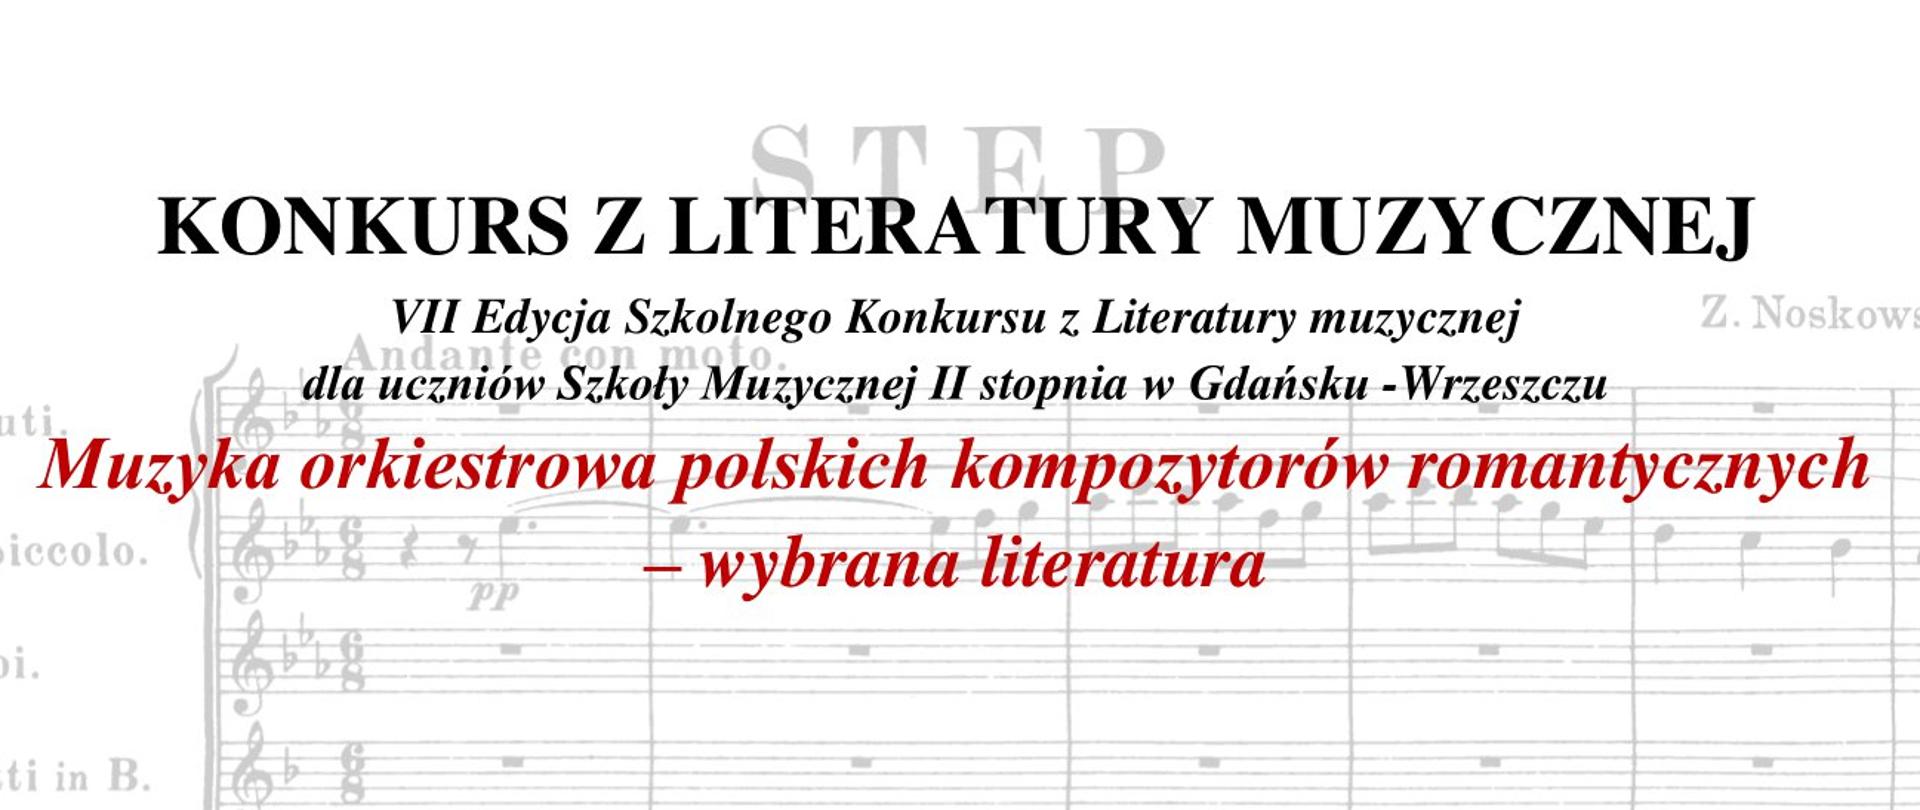 Na plakacie znajdują się informacje związane z VII Edycją Szkolnego Konkursu z Literatury Muzycznej pt. Muzyka orkiestrowa polskich kompozytorów romantycznych – wybrana literatura.